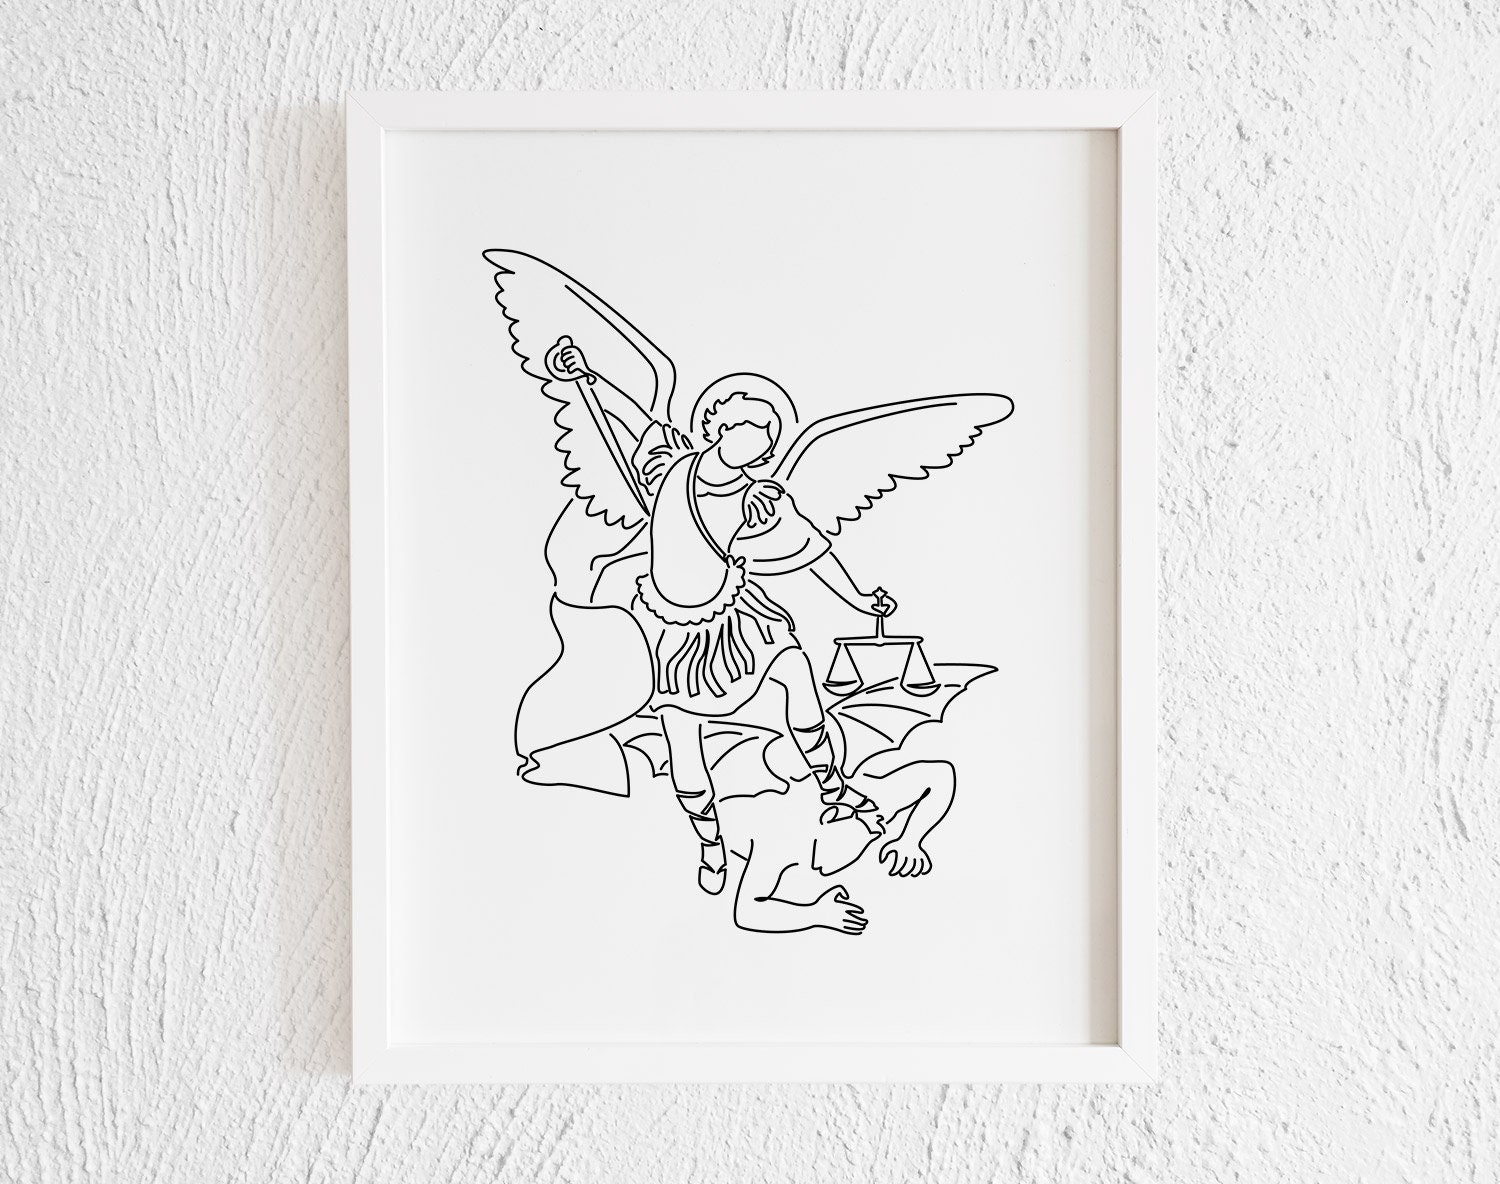 Archangel Michael Doodle Print pic pic